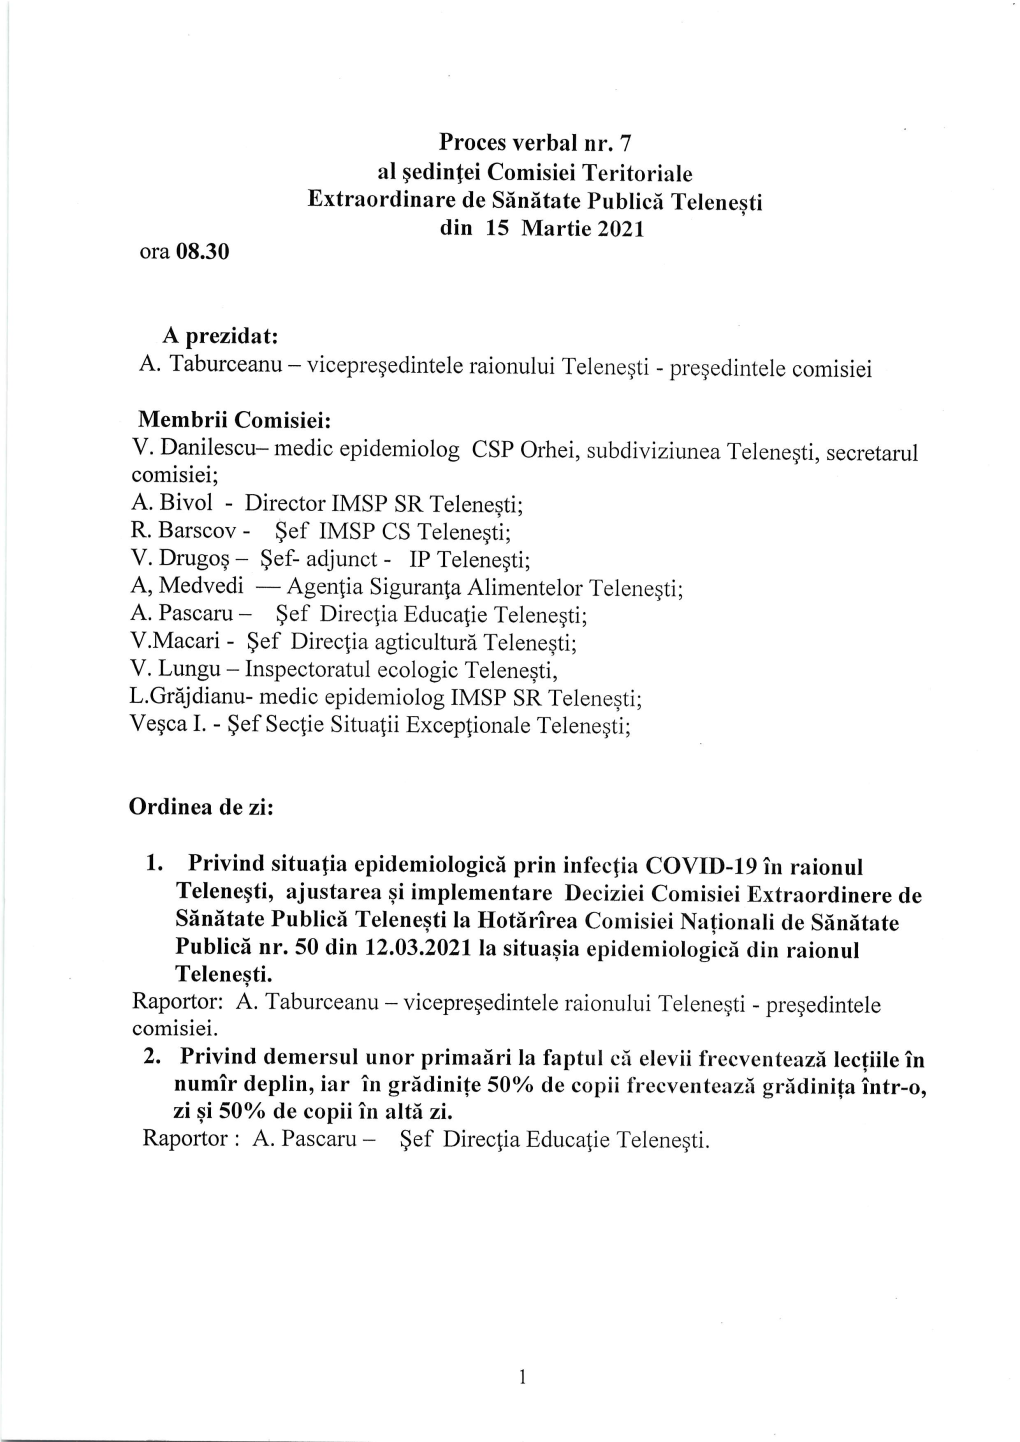 Hotărârea Nr. 7 Din 15.03.2021 a Comisiei Teritoriale Extraordinare De Sănătate Publică Telenești